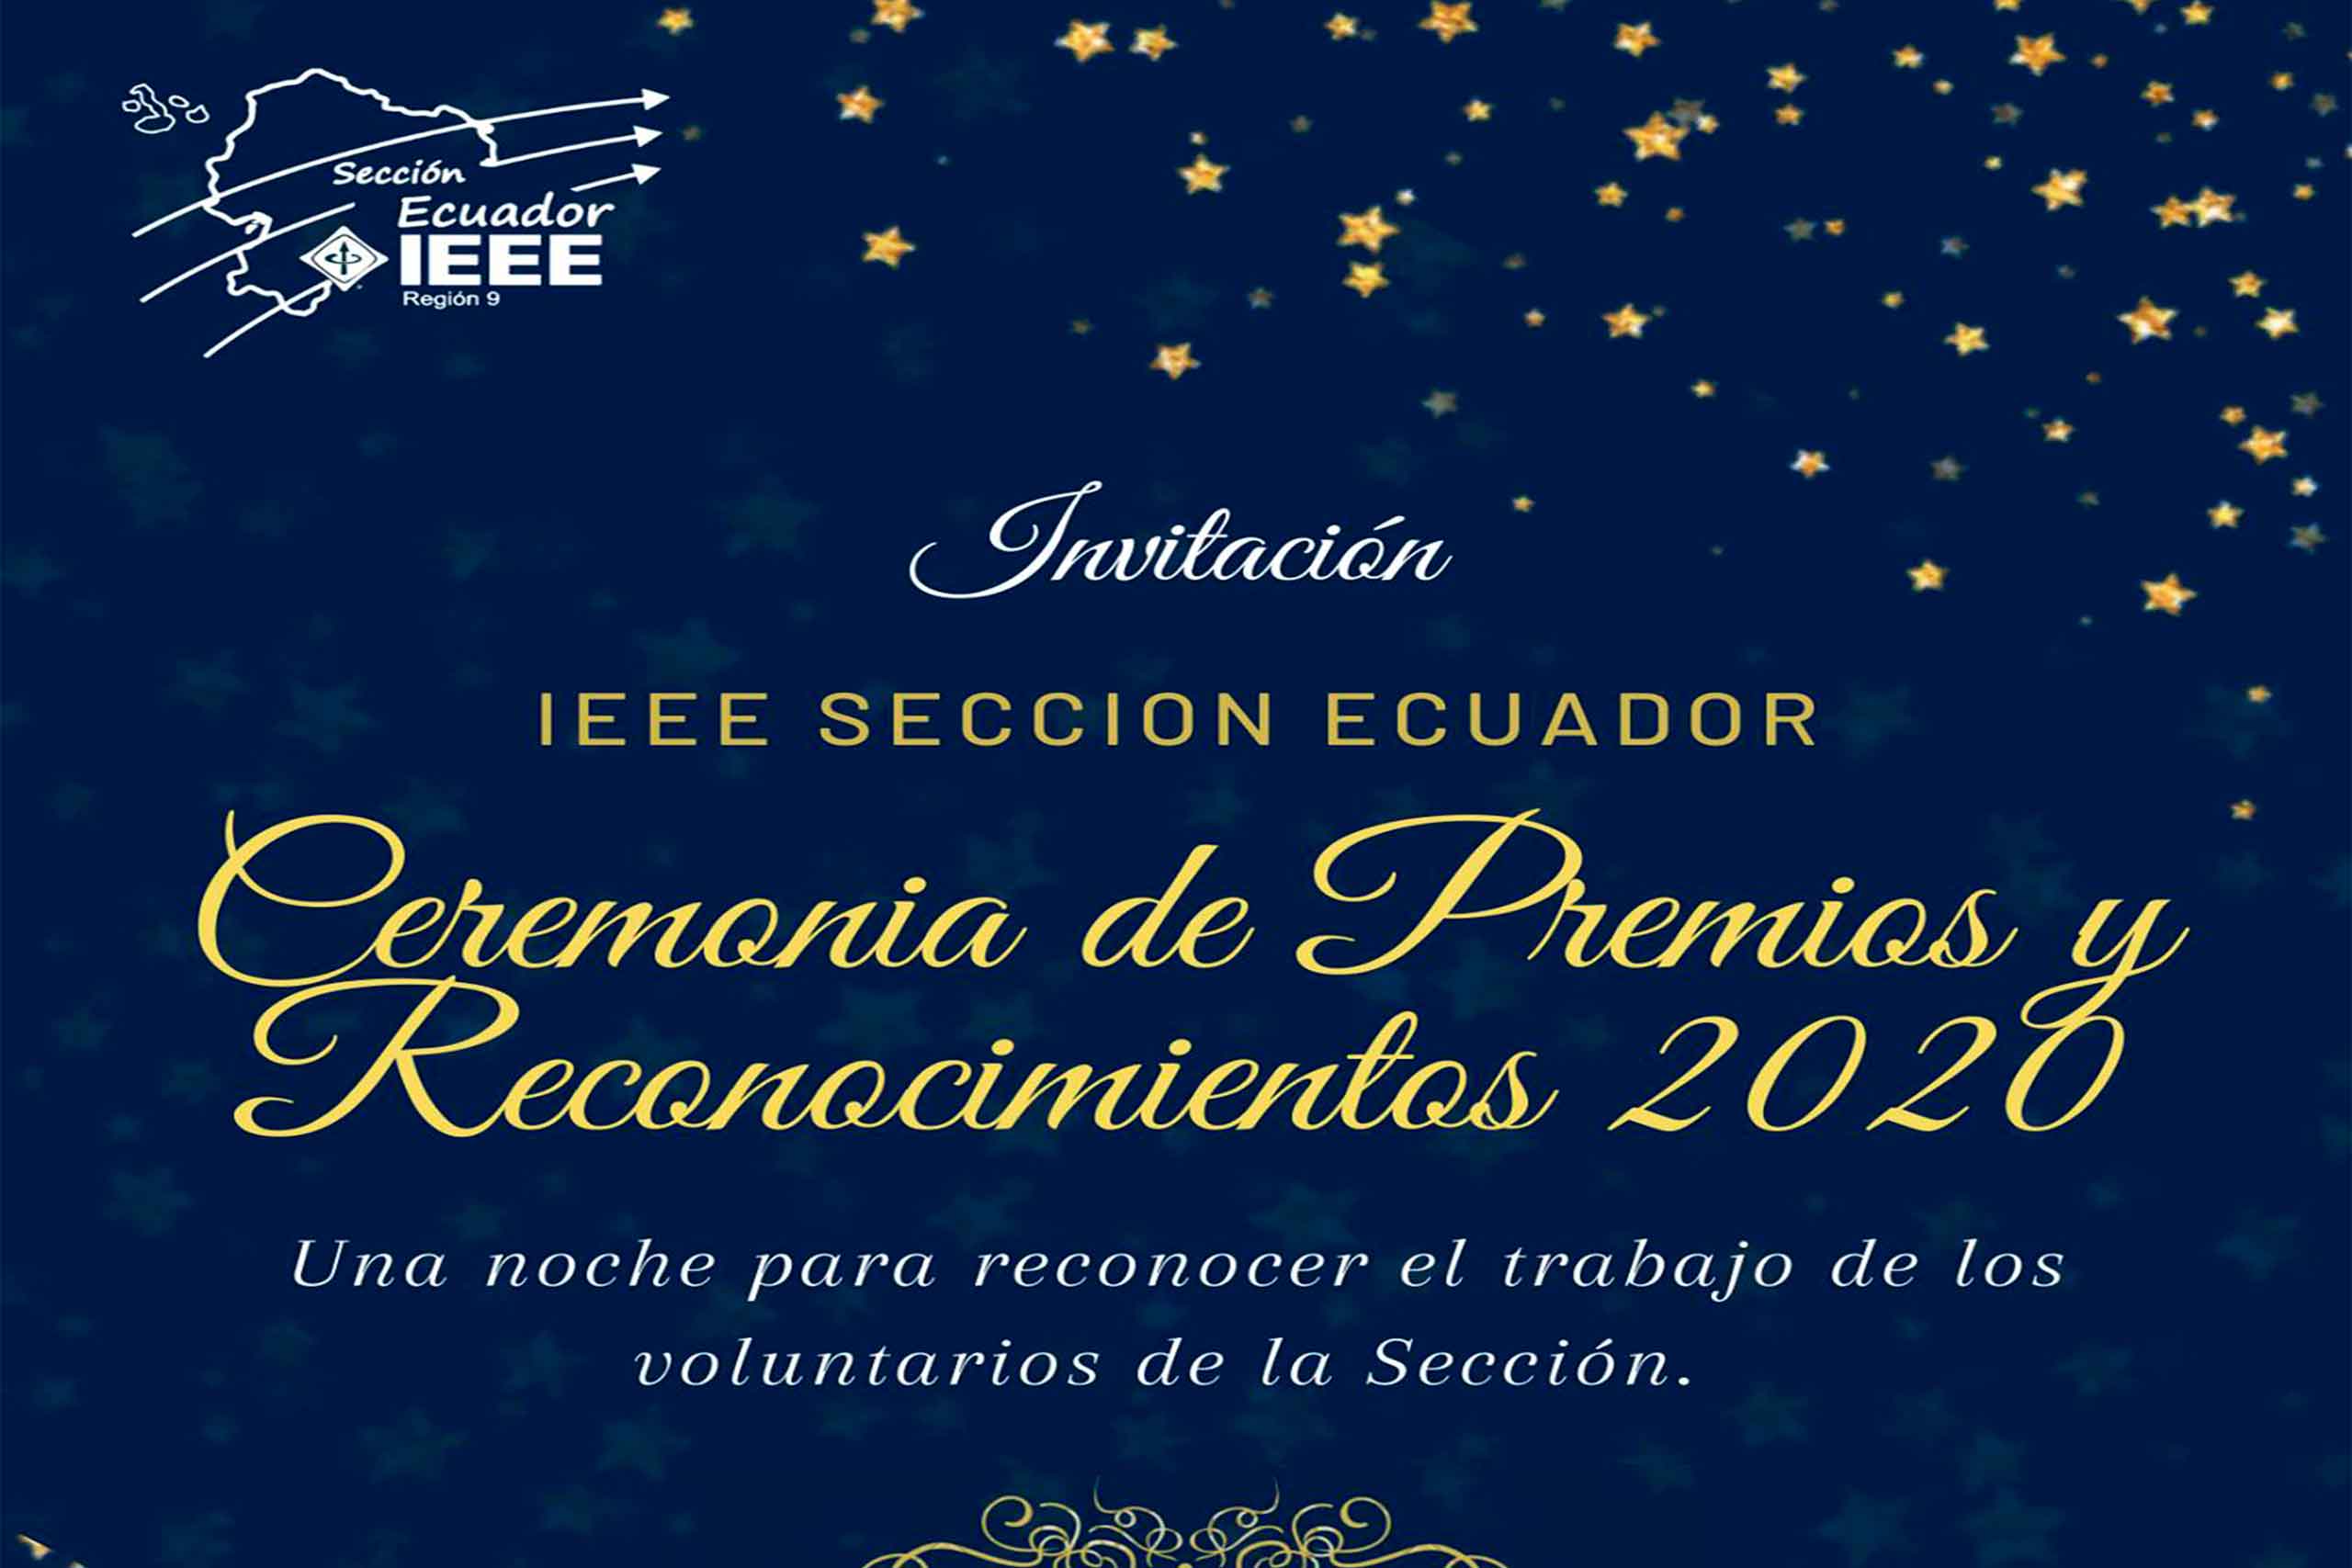 La UPS, es la institución con más galardones en la ceremonia de premiación de IEEE